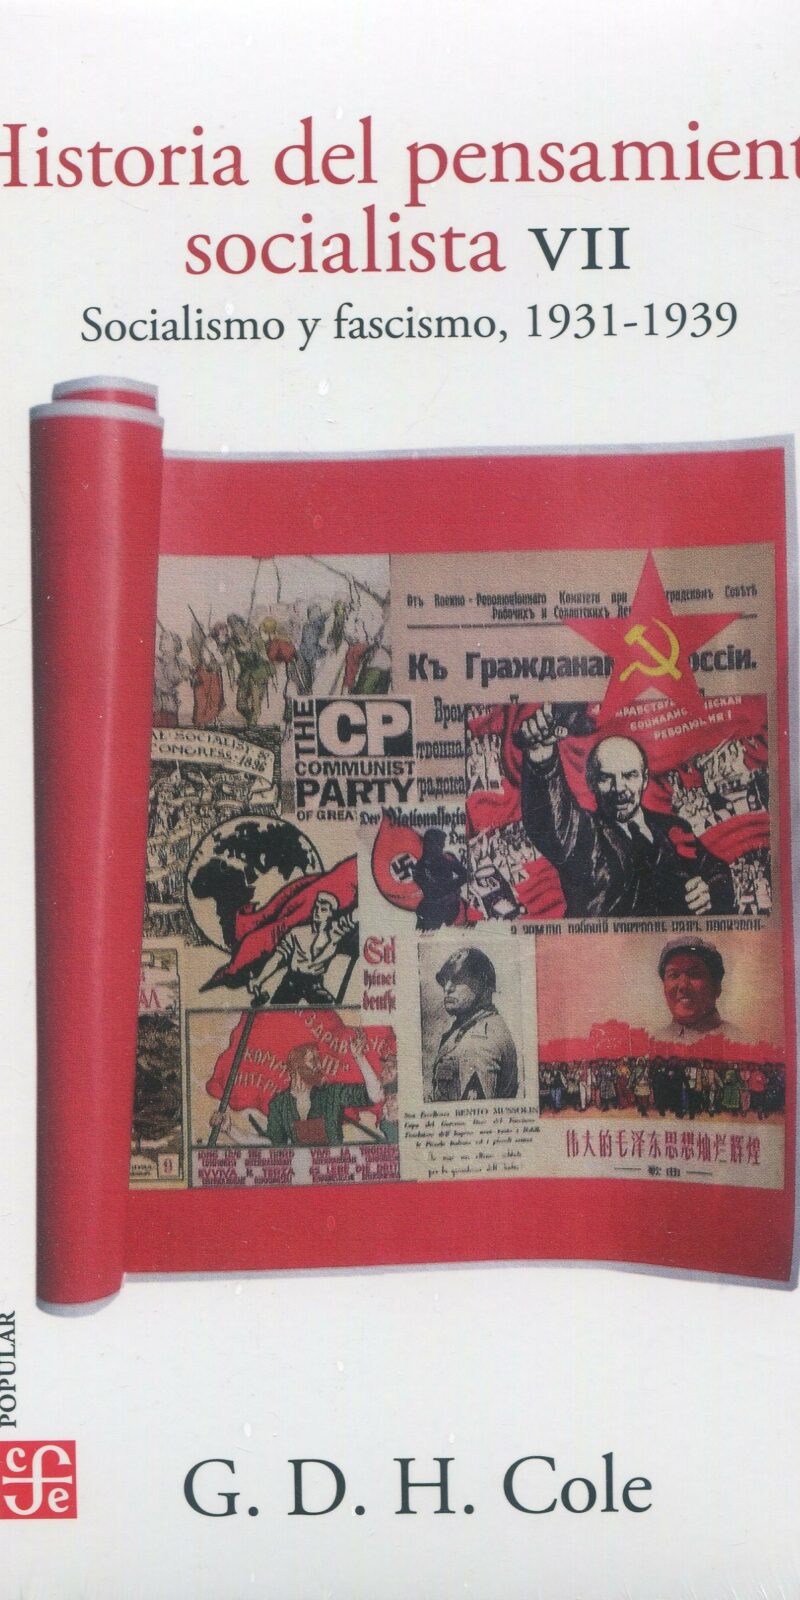 Historia del pensamiento socialista VII. Socialismo y fascismo 1931-1939